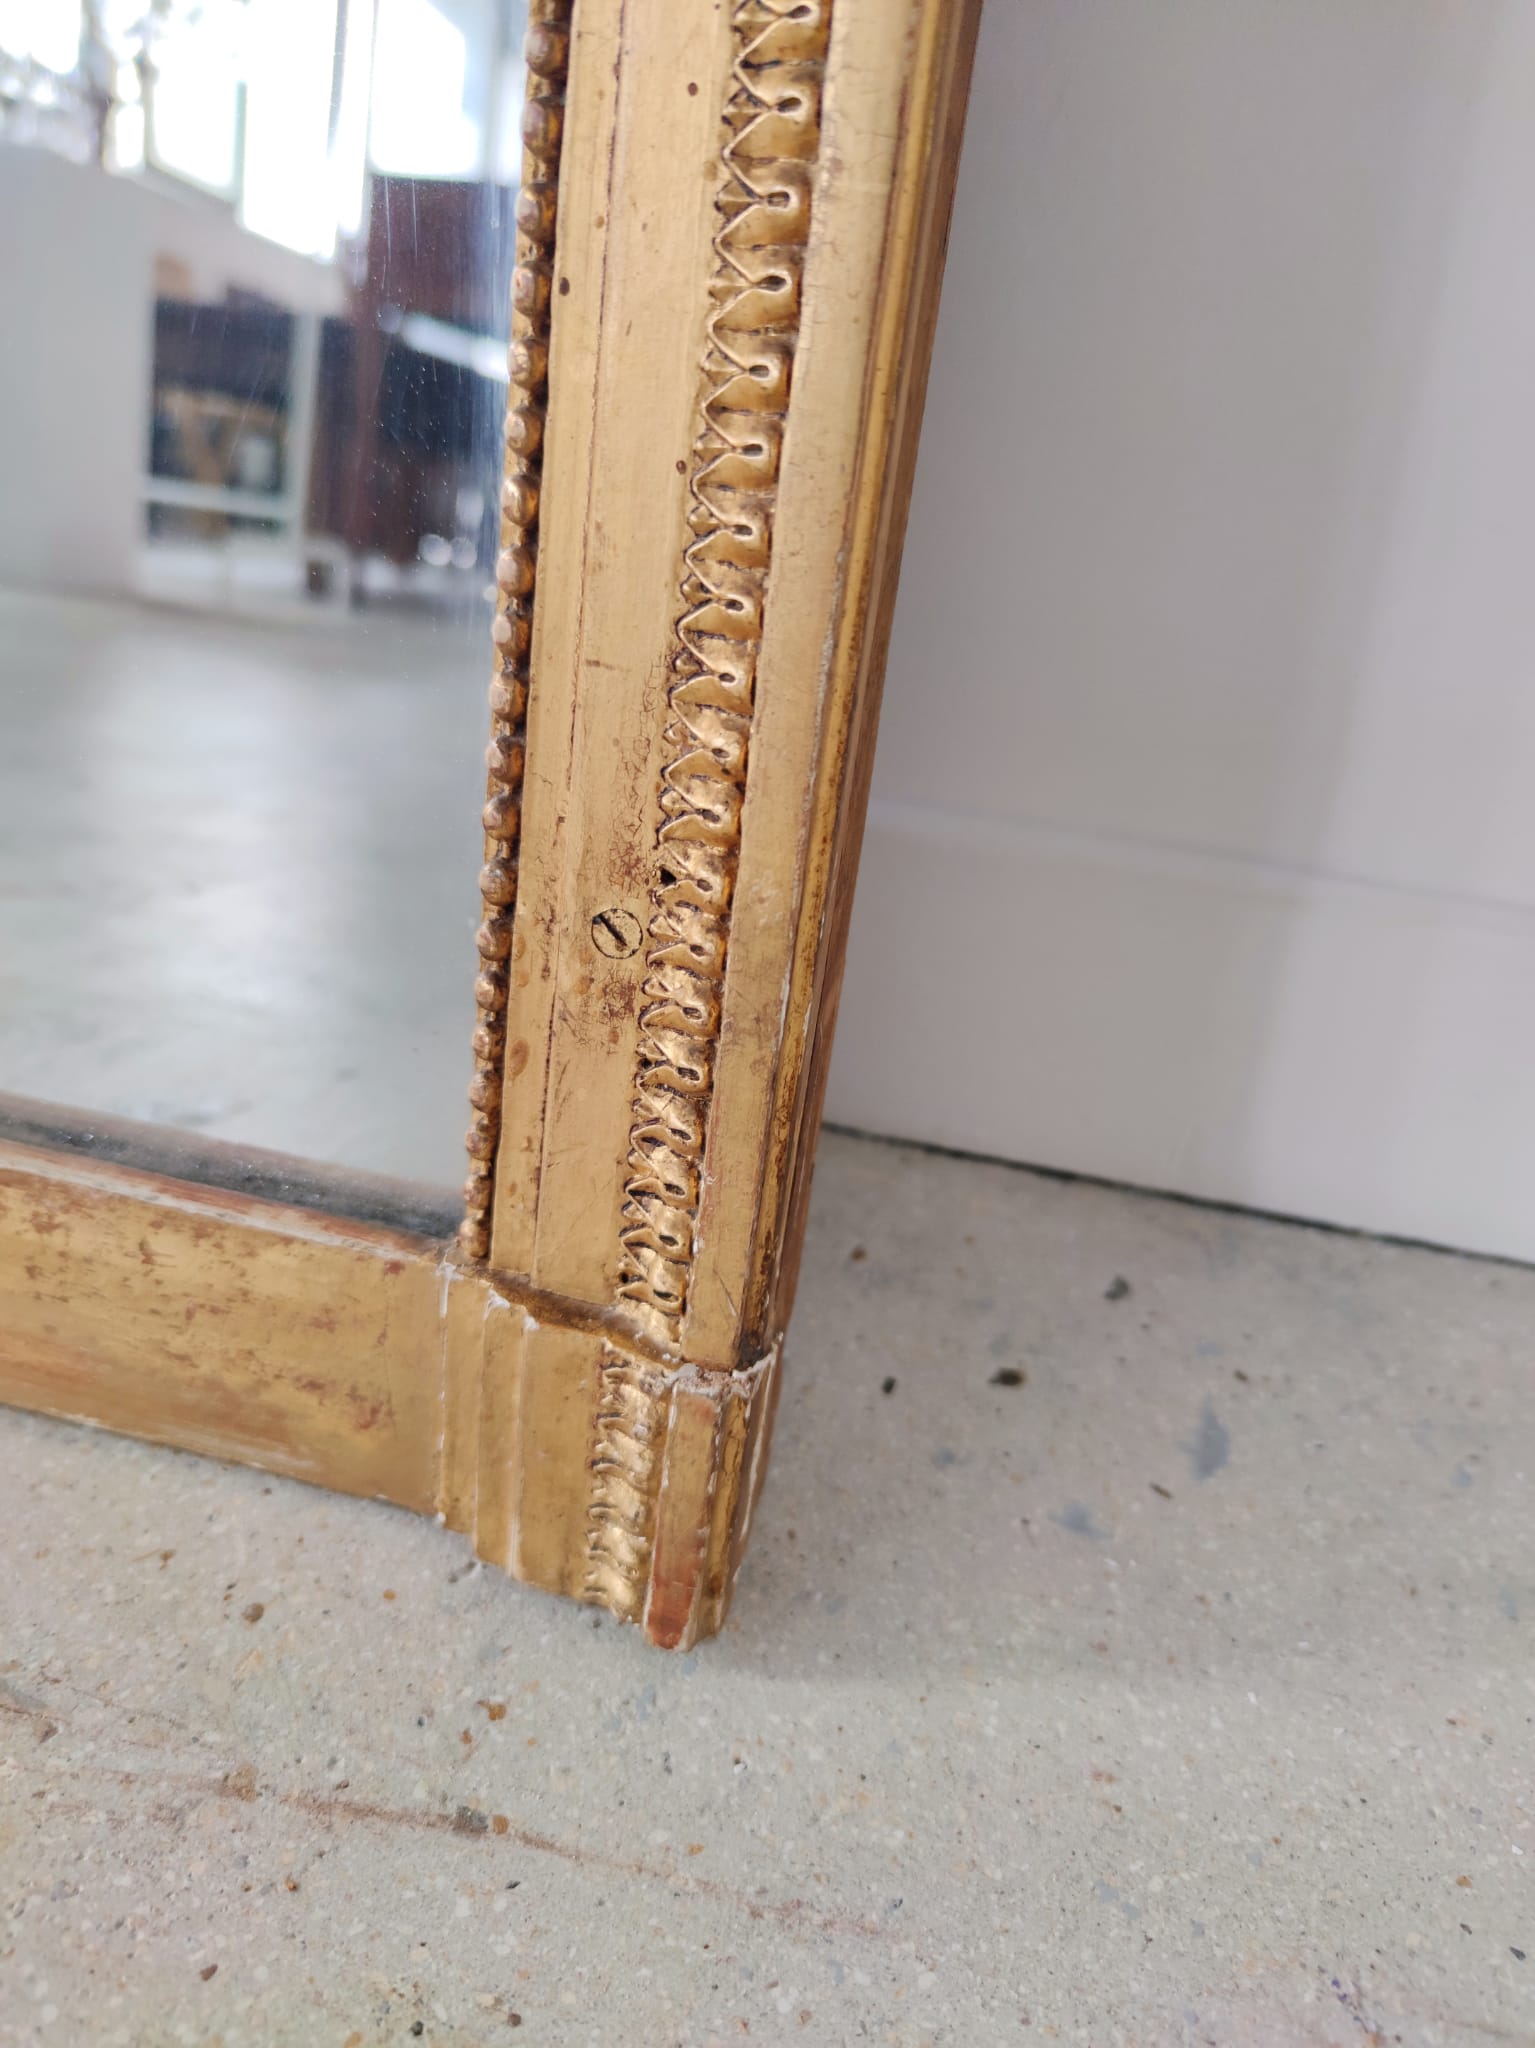 Miroir rectangulaire en bois doré XIXe H:1m21